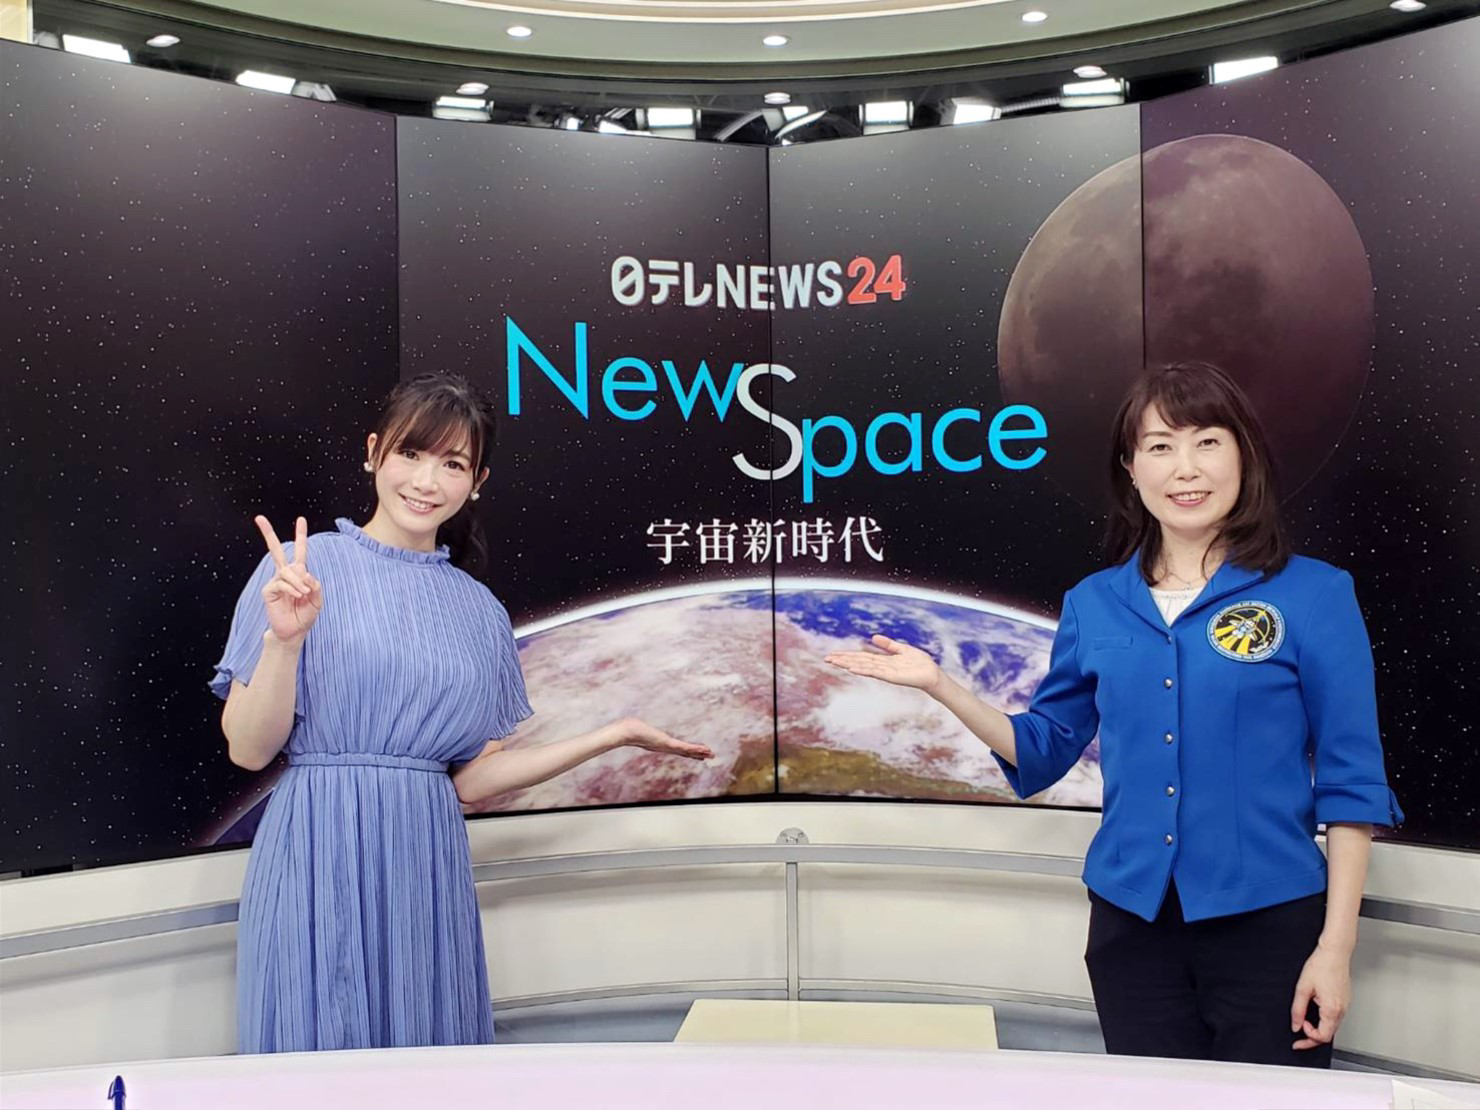 日テレNEWS24 NewSpace-宇宙新時代-より 左から榎本麗美さん、山崎直子宇宙飛行士